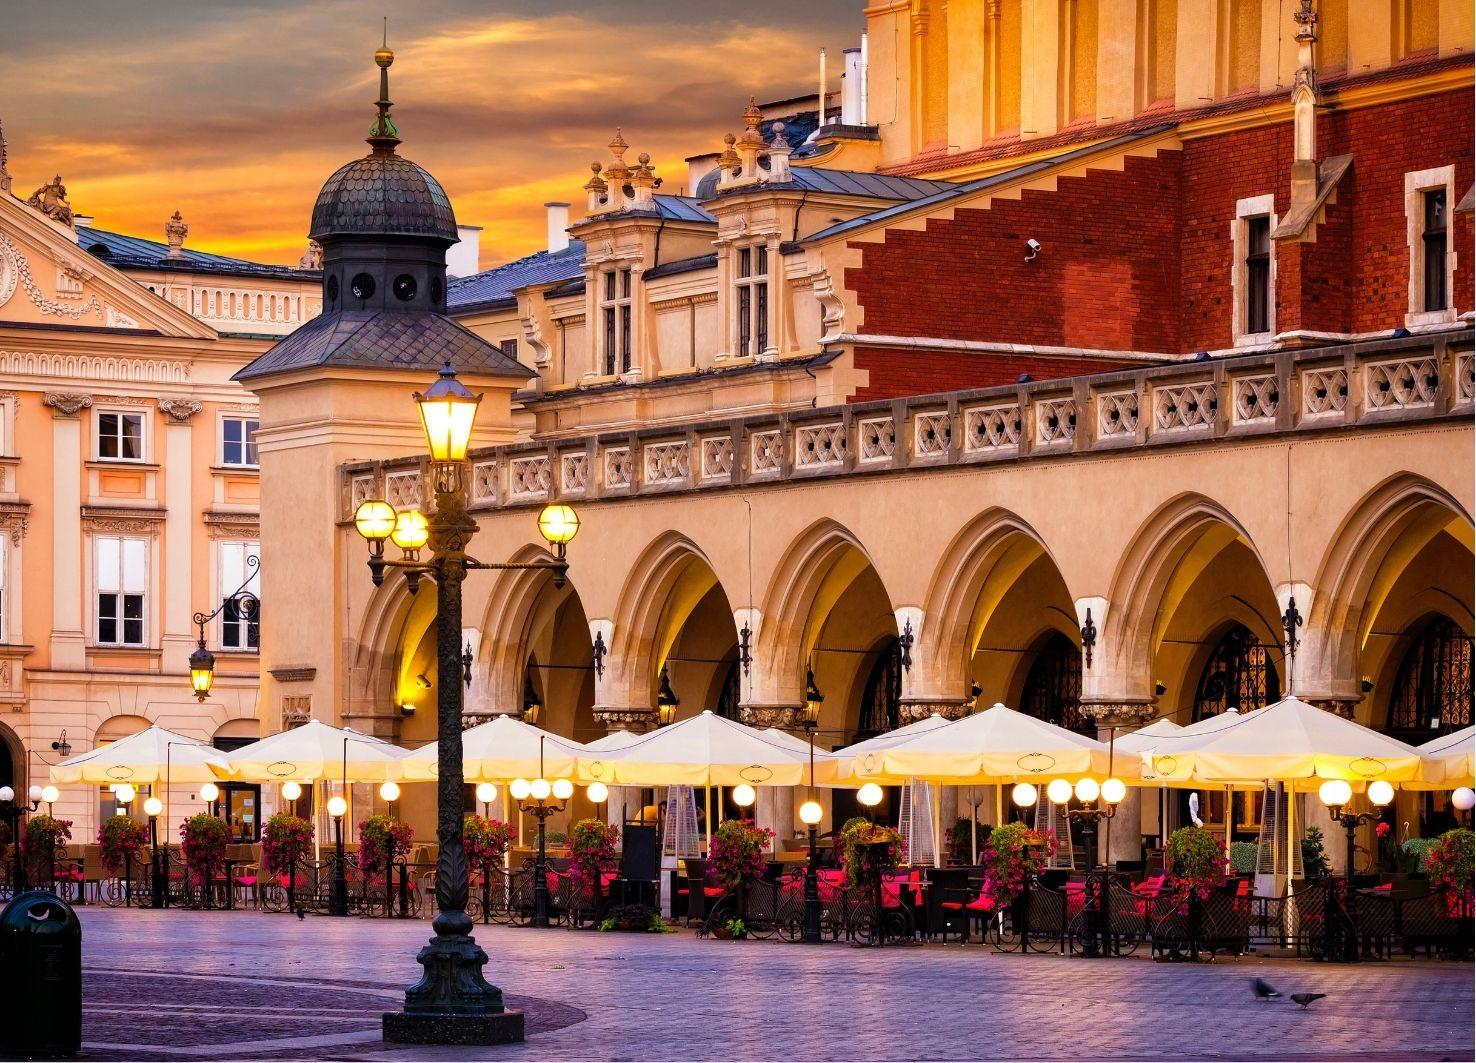 Main Market Square in Krakow